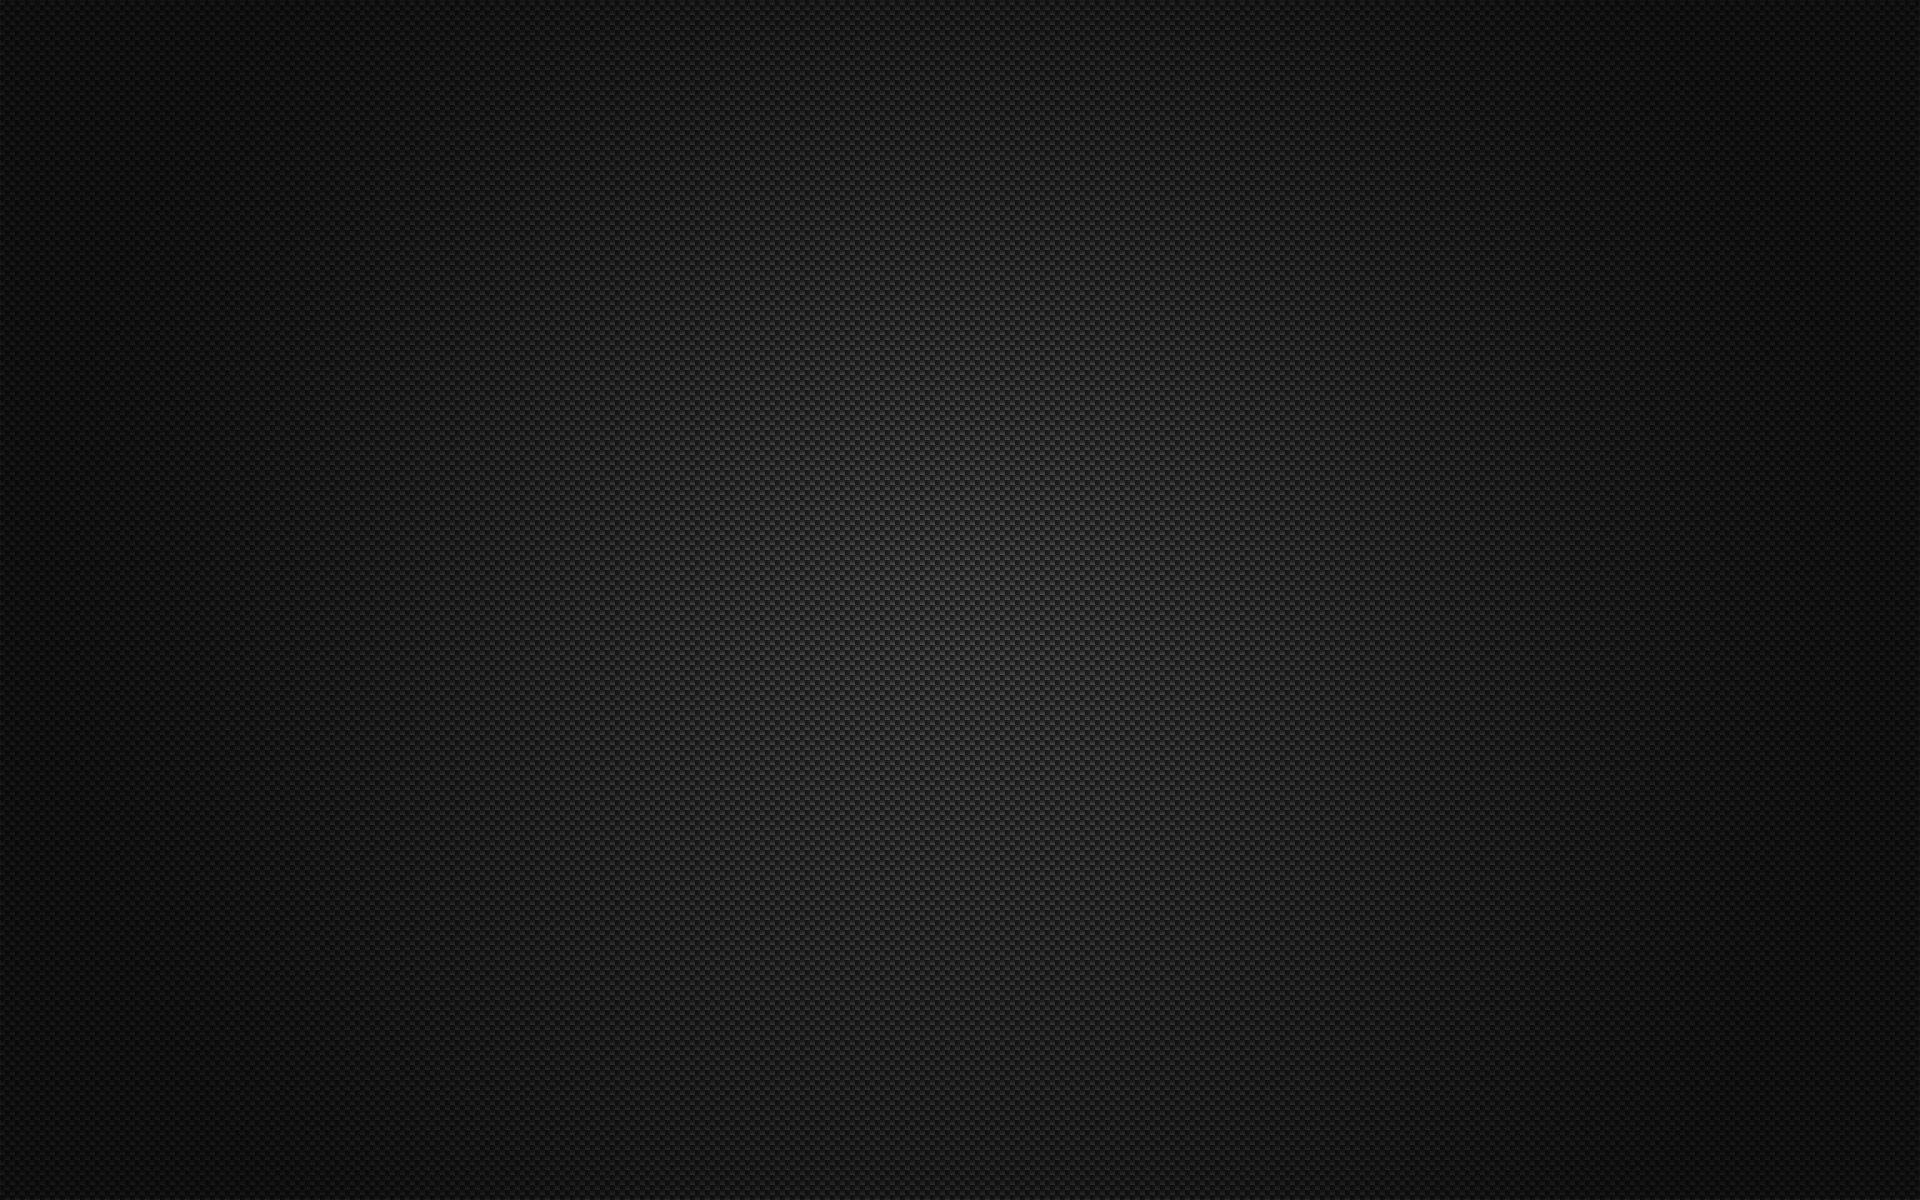 1920 x 1200 · jpeg - Black HD Wallpaper | Background Image | 1920x1200 | ID:80899 ...